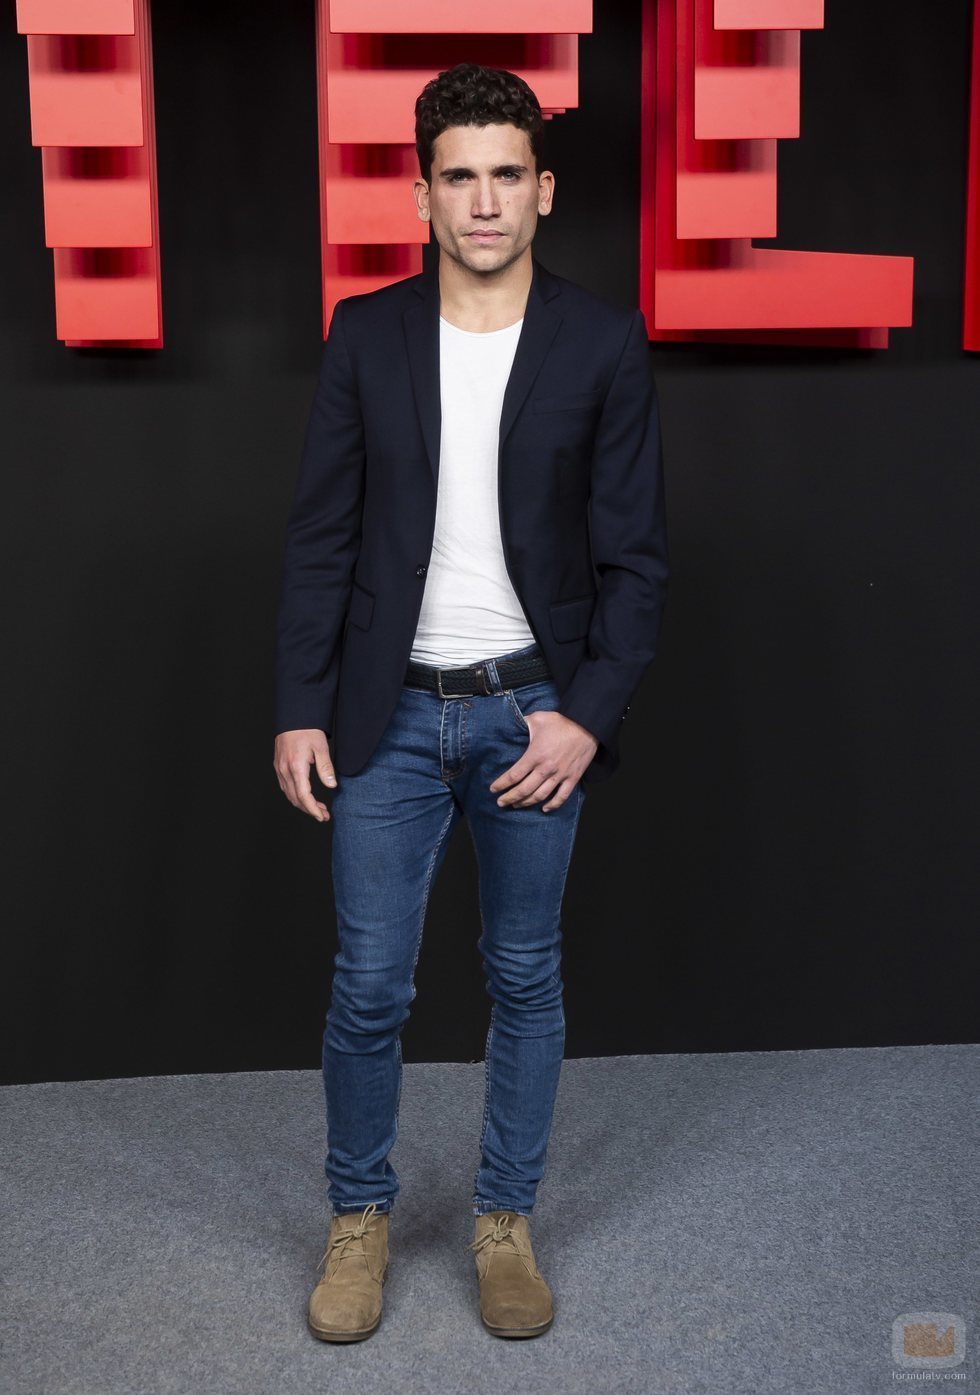 Jaime Lorente, en la inauguración del centro de producción de Netflix en Madrid